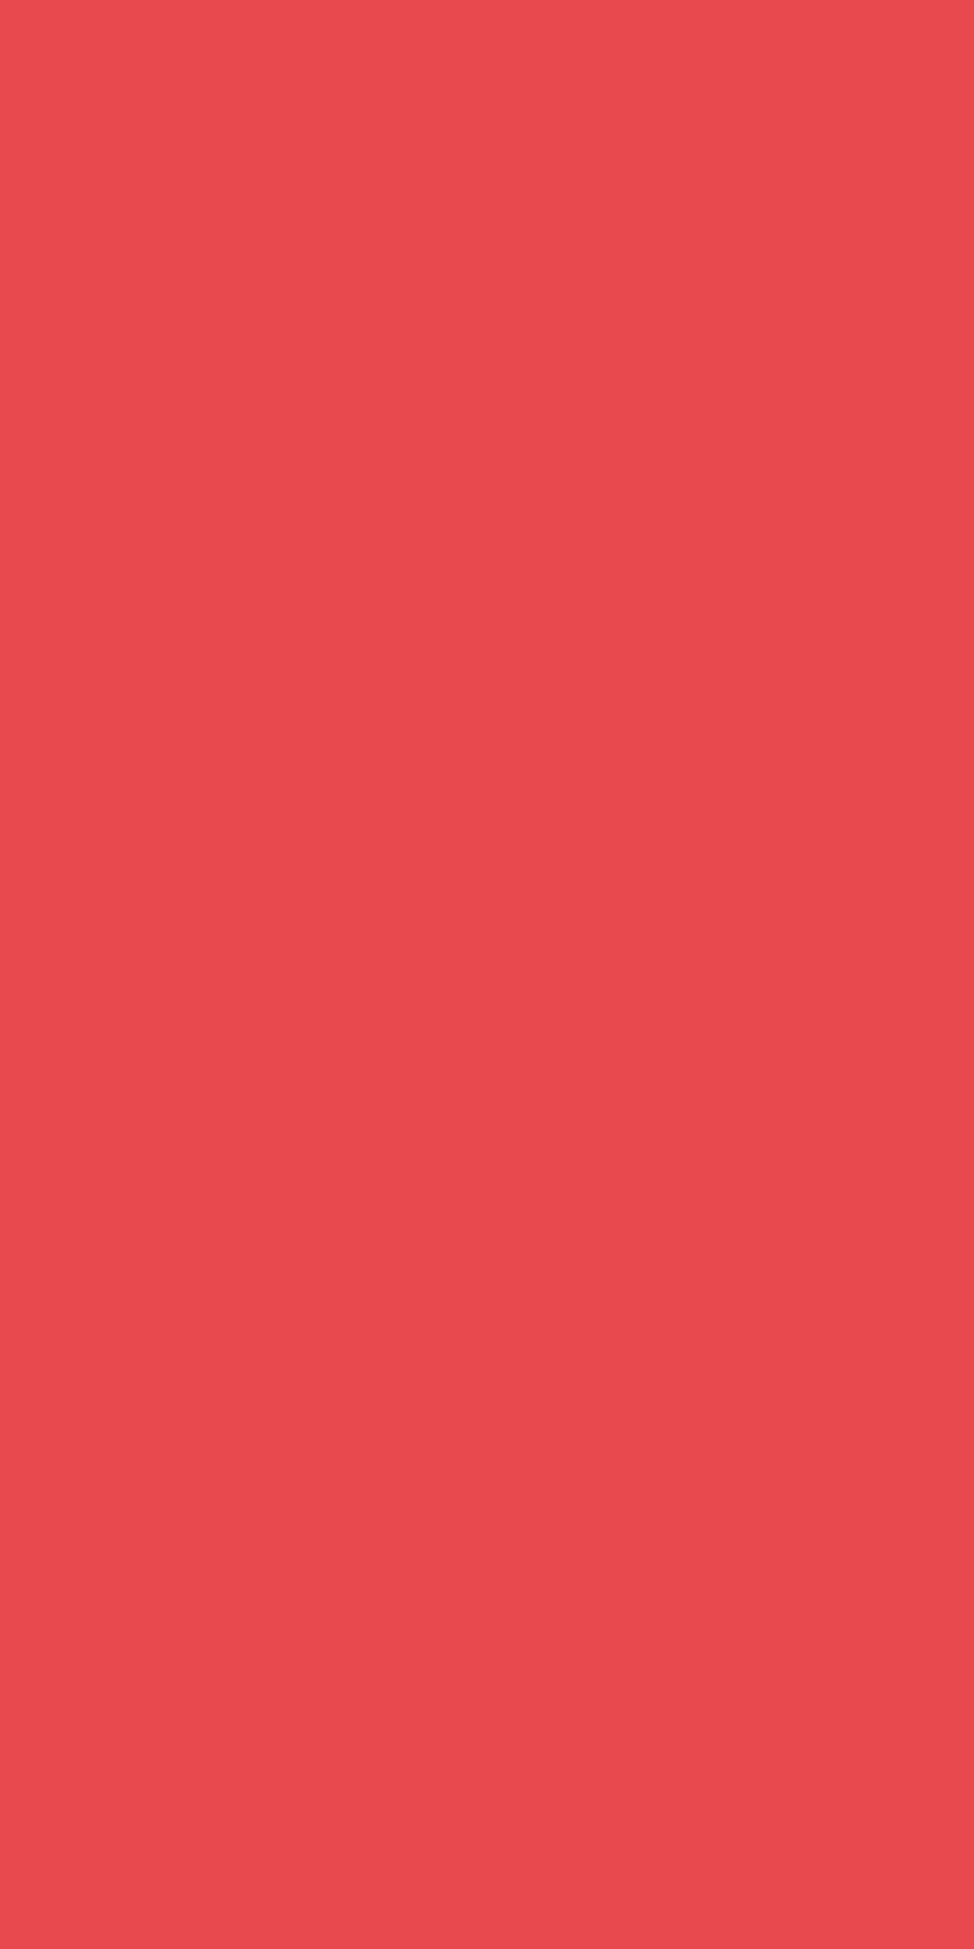 Zelltuchservietten Spenderfalz, 33 x 32 cm, rot